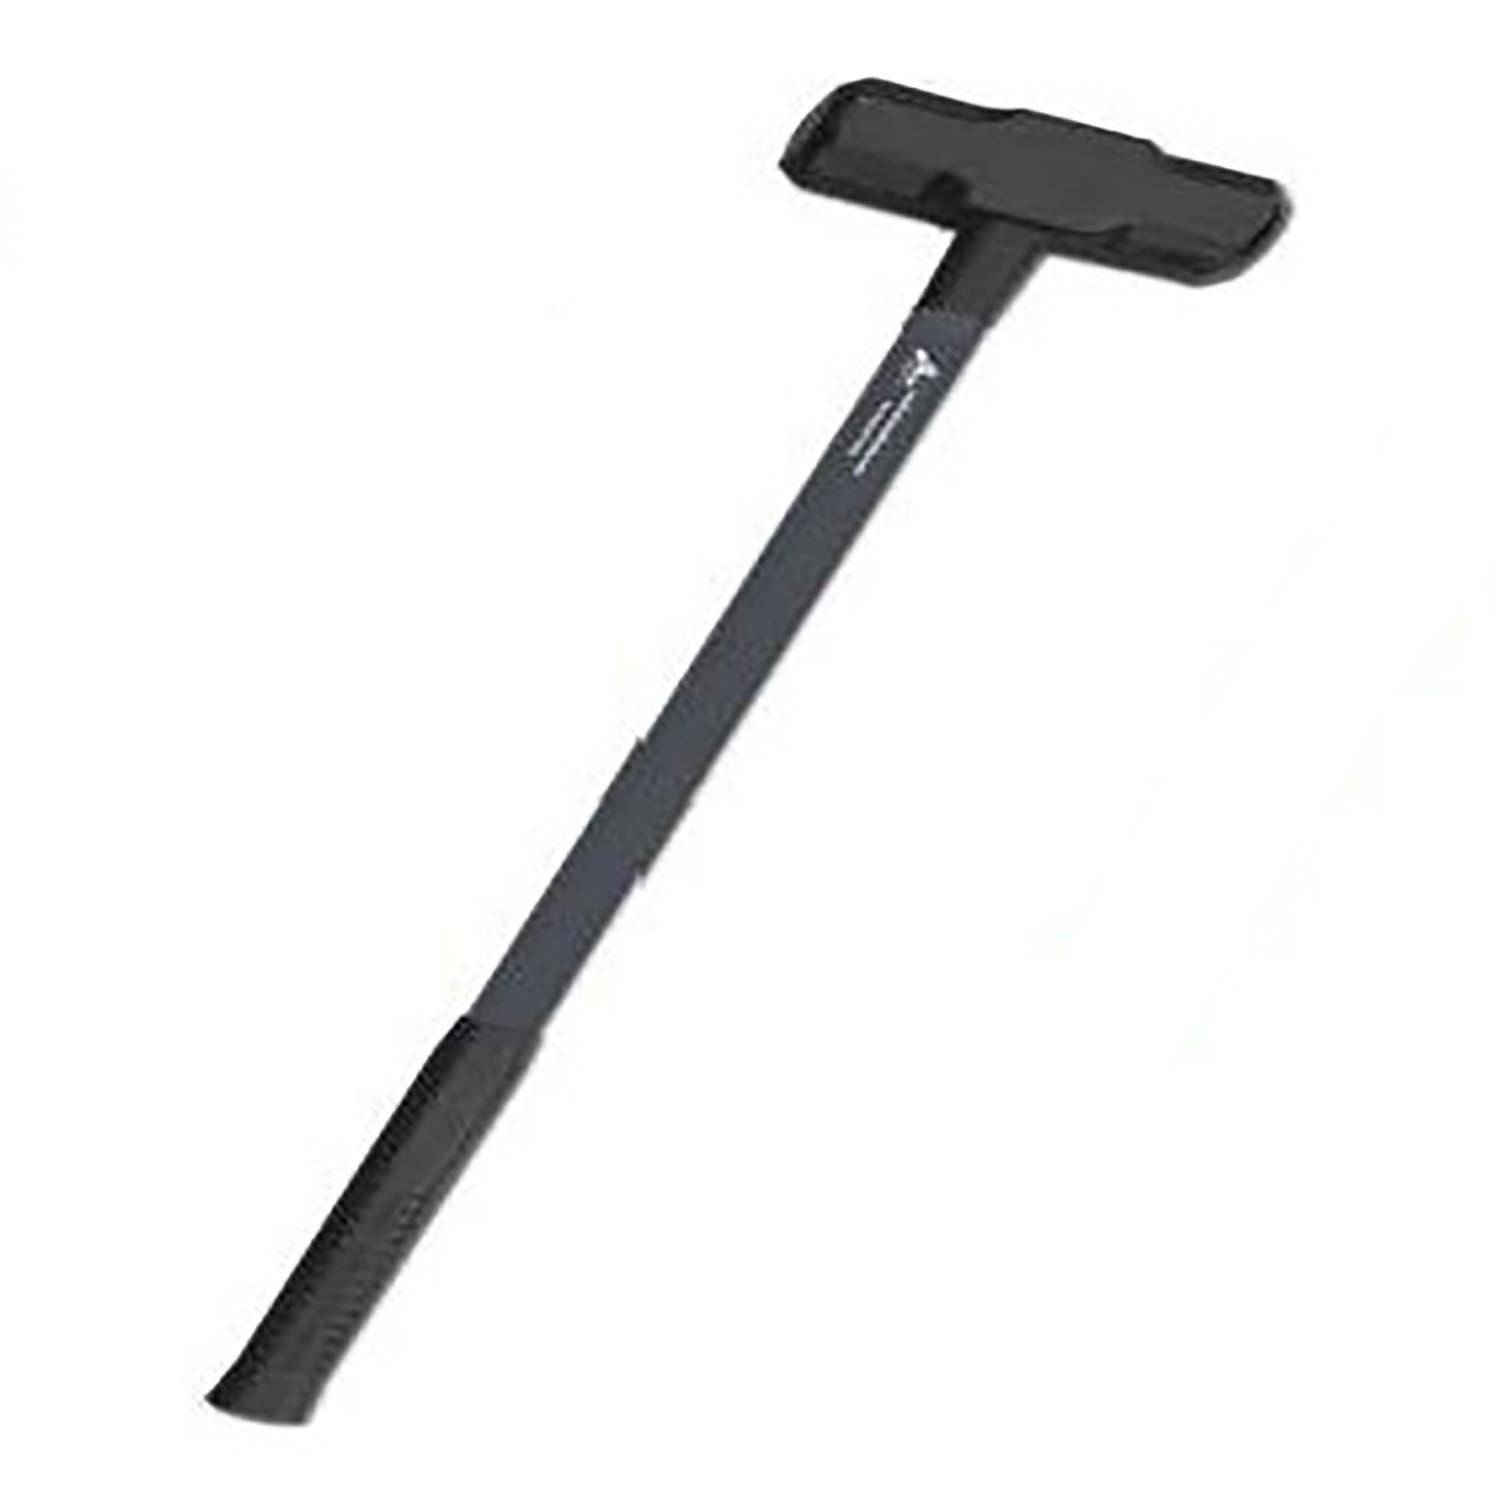 Leatherhead Tools 8lbs Sledge Hammer with Fiberglass Handle